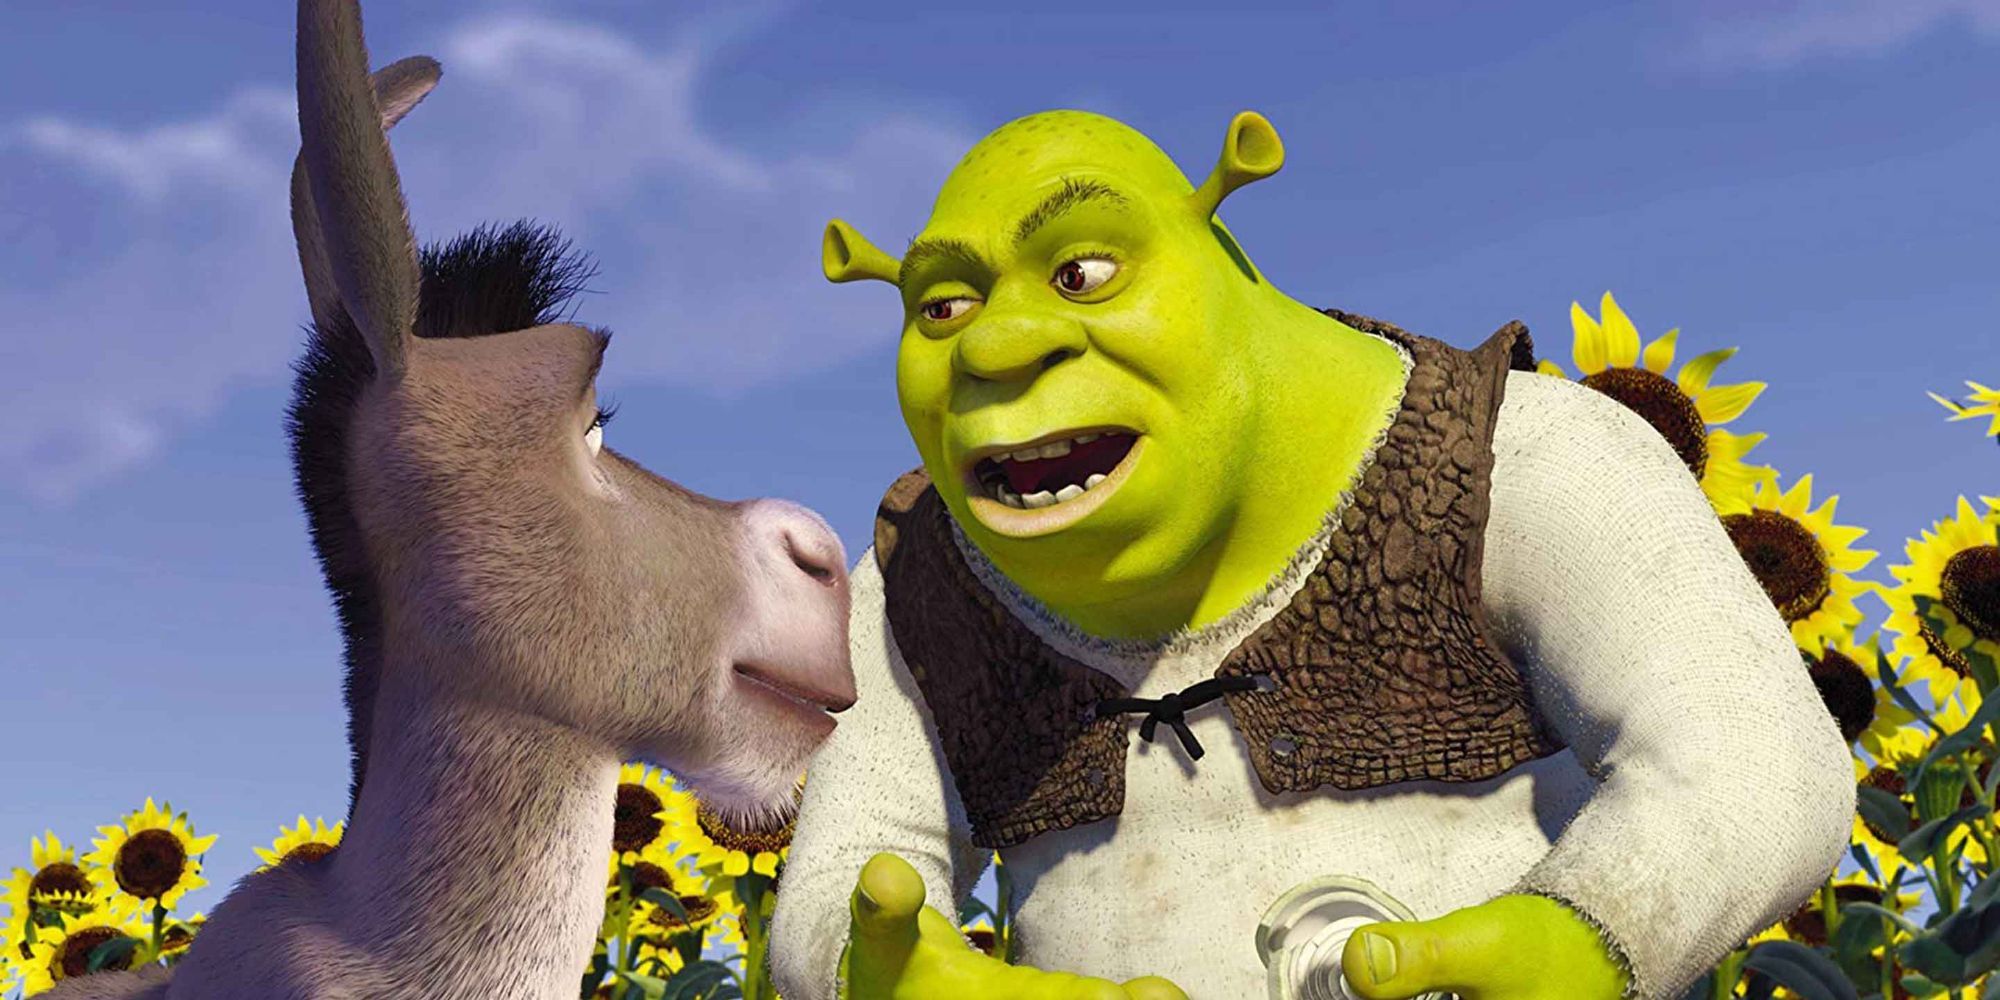 Shrek and Donkey in Shrek (2001)